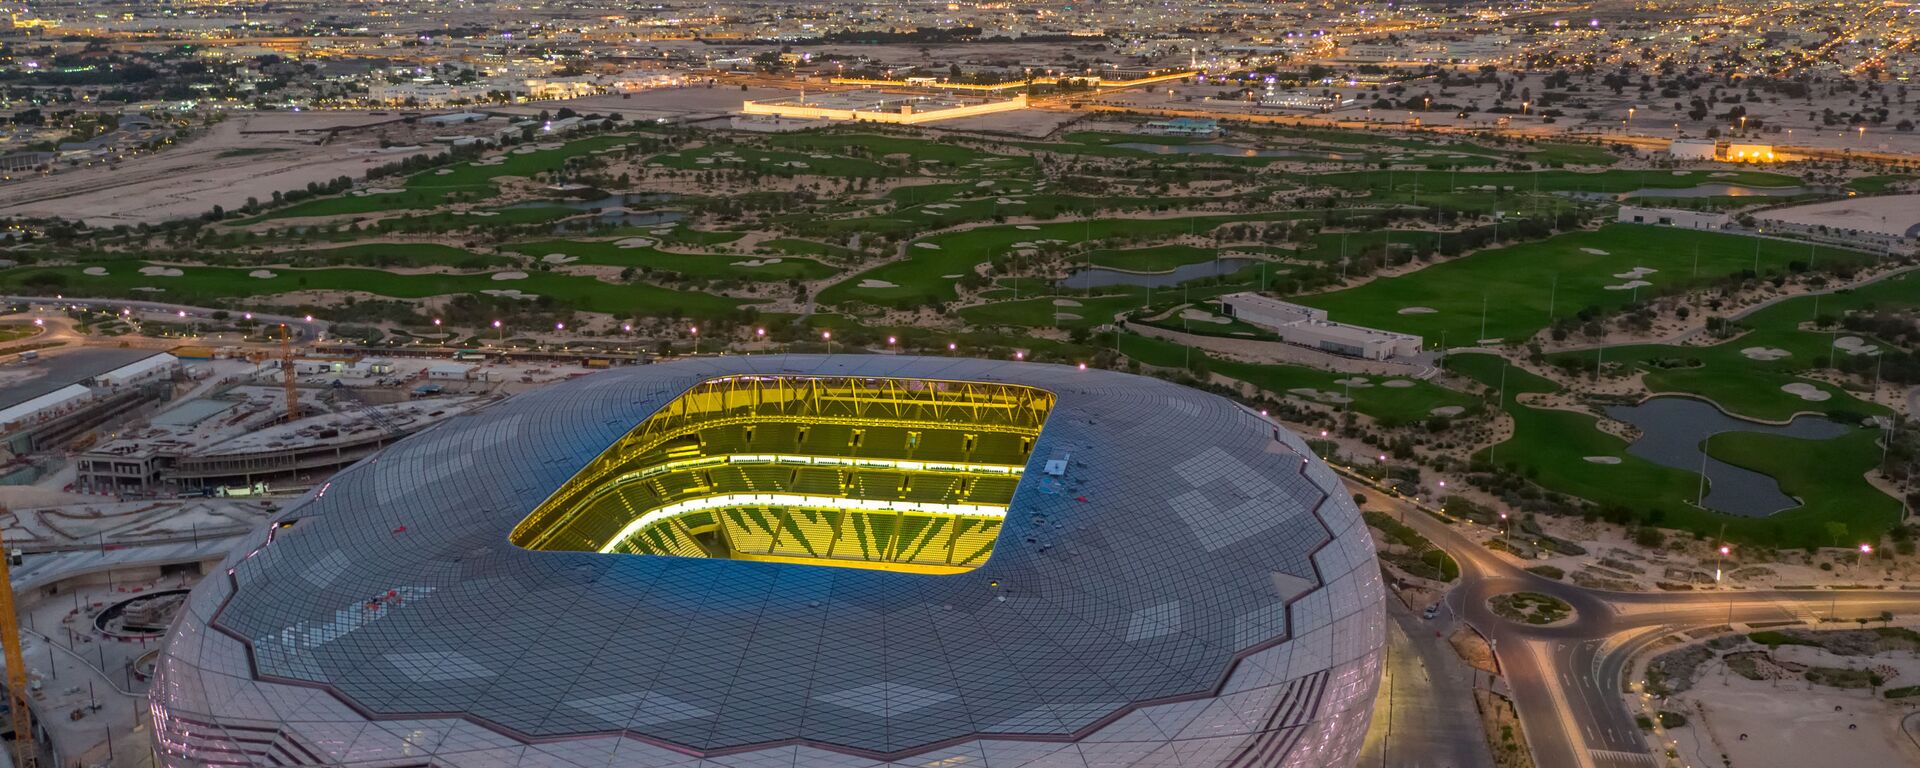 ملعب المدينة التعليمية، ضمن ملاعب كأس العالم في قطر 2022 بسعة 40 ألف متفرج - سبوتنيك عربي, 1920, 17.06.2022